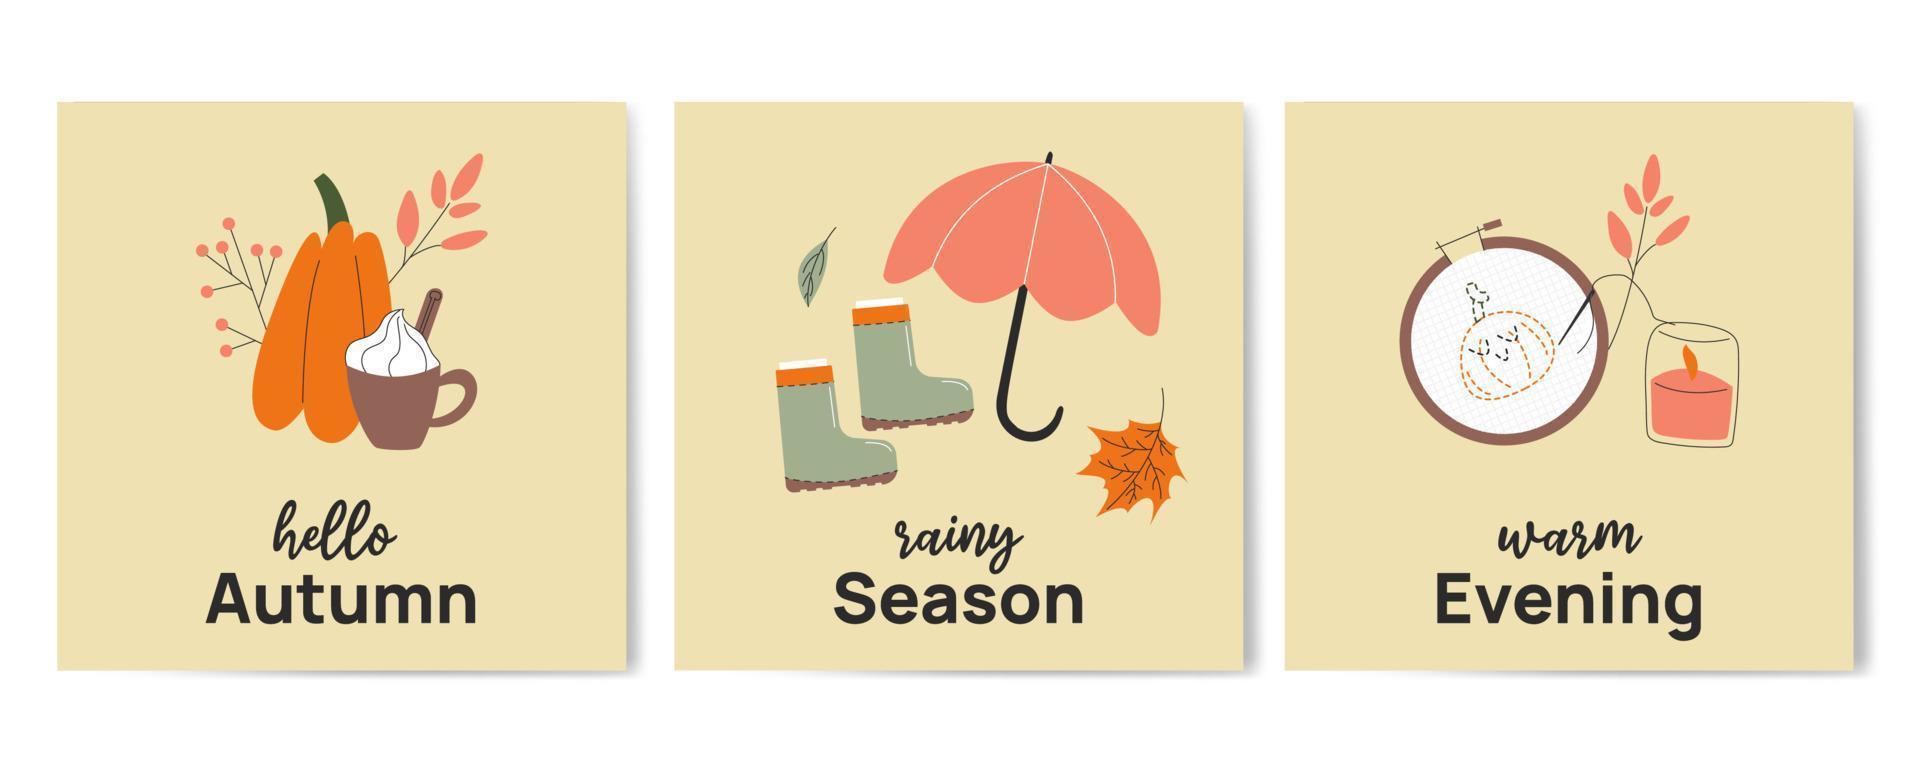 Ciao autunno. piovoso stagione. caldo sera saluto mano disegnato carta manifesto modello. minimalista cartolina con zucca, ombrello, ricamo. vettore illustrazione nel piatto cartone animato stile.